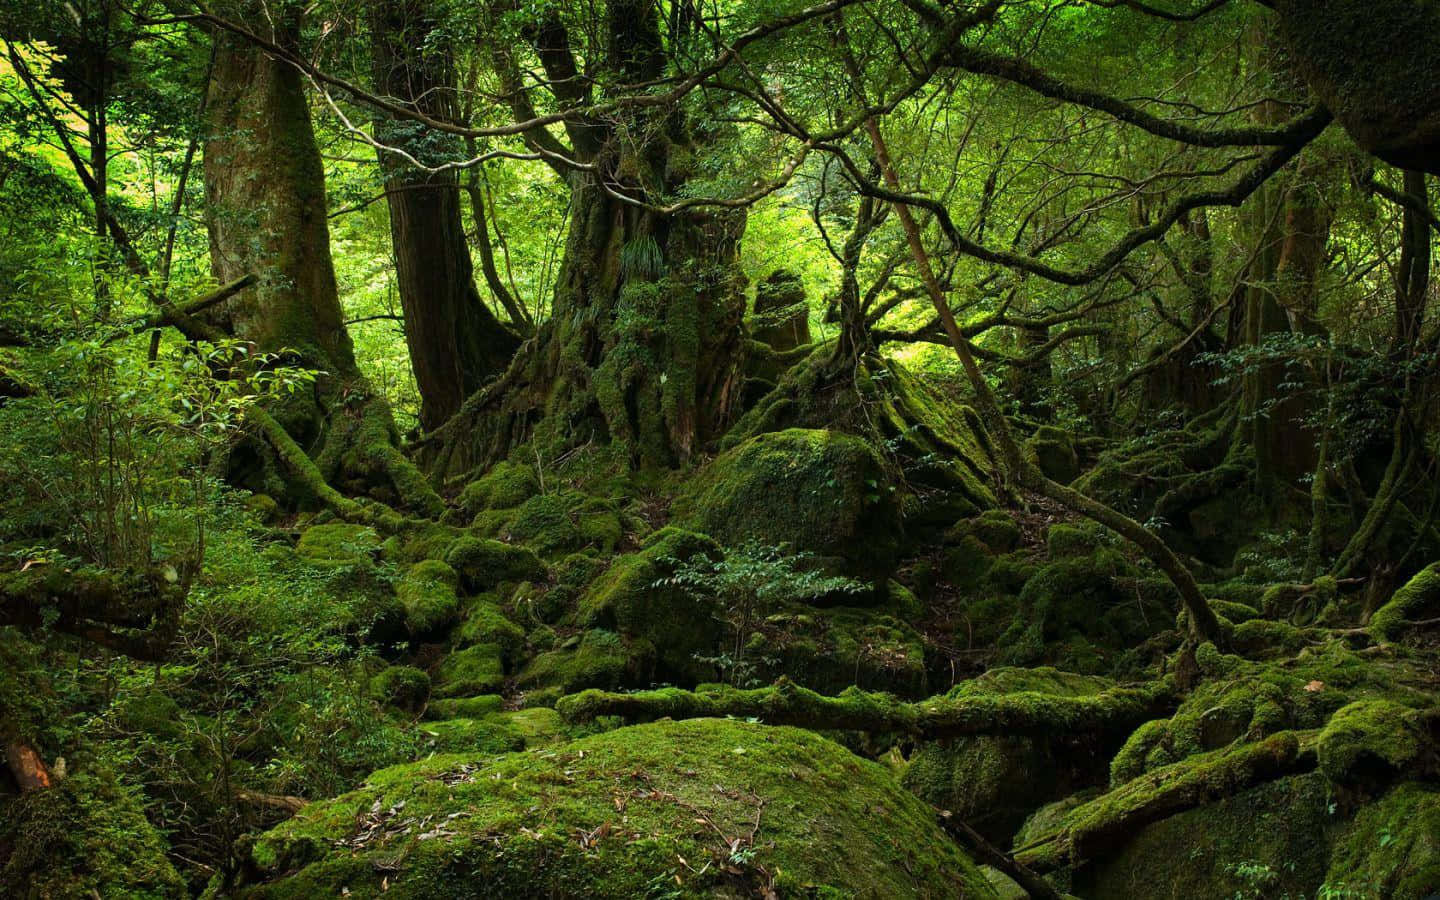 Rolling Hills of Moss - Breathtaking Scenery